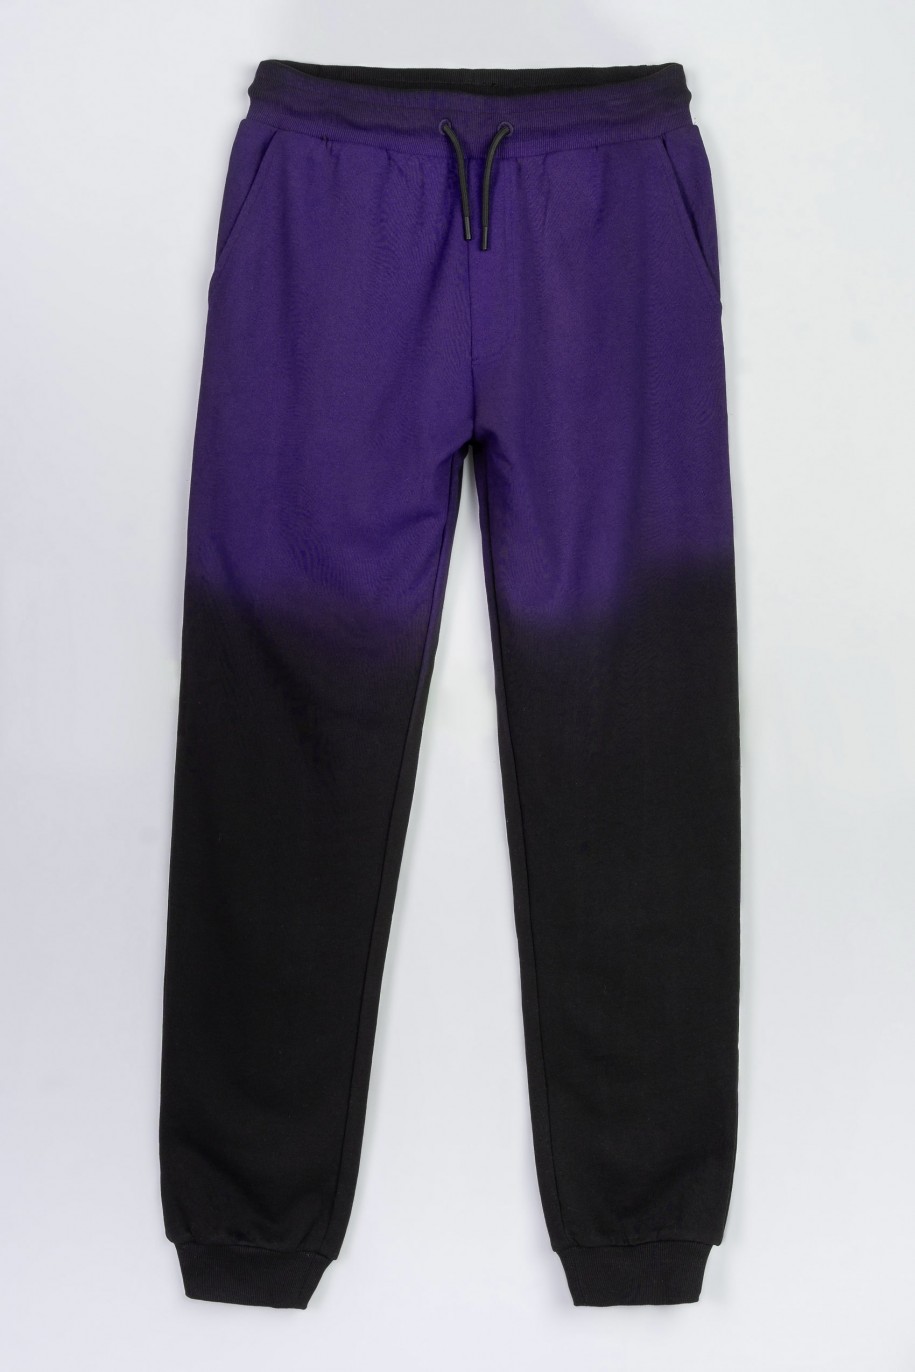 Granatowo-czarne spodnie dresowe z efektem ombre - 47603